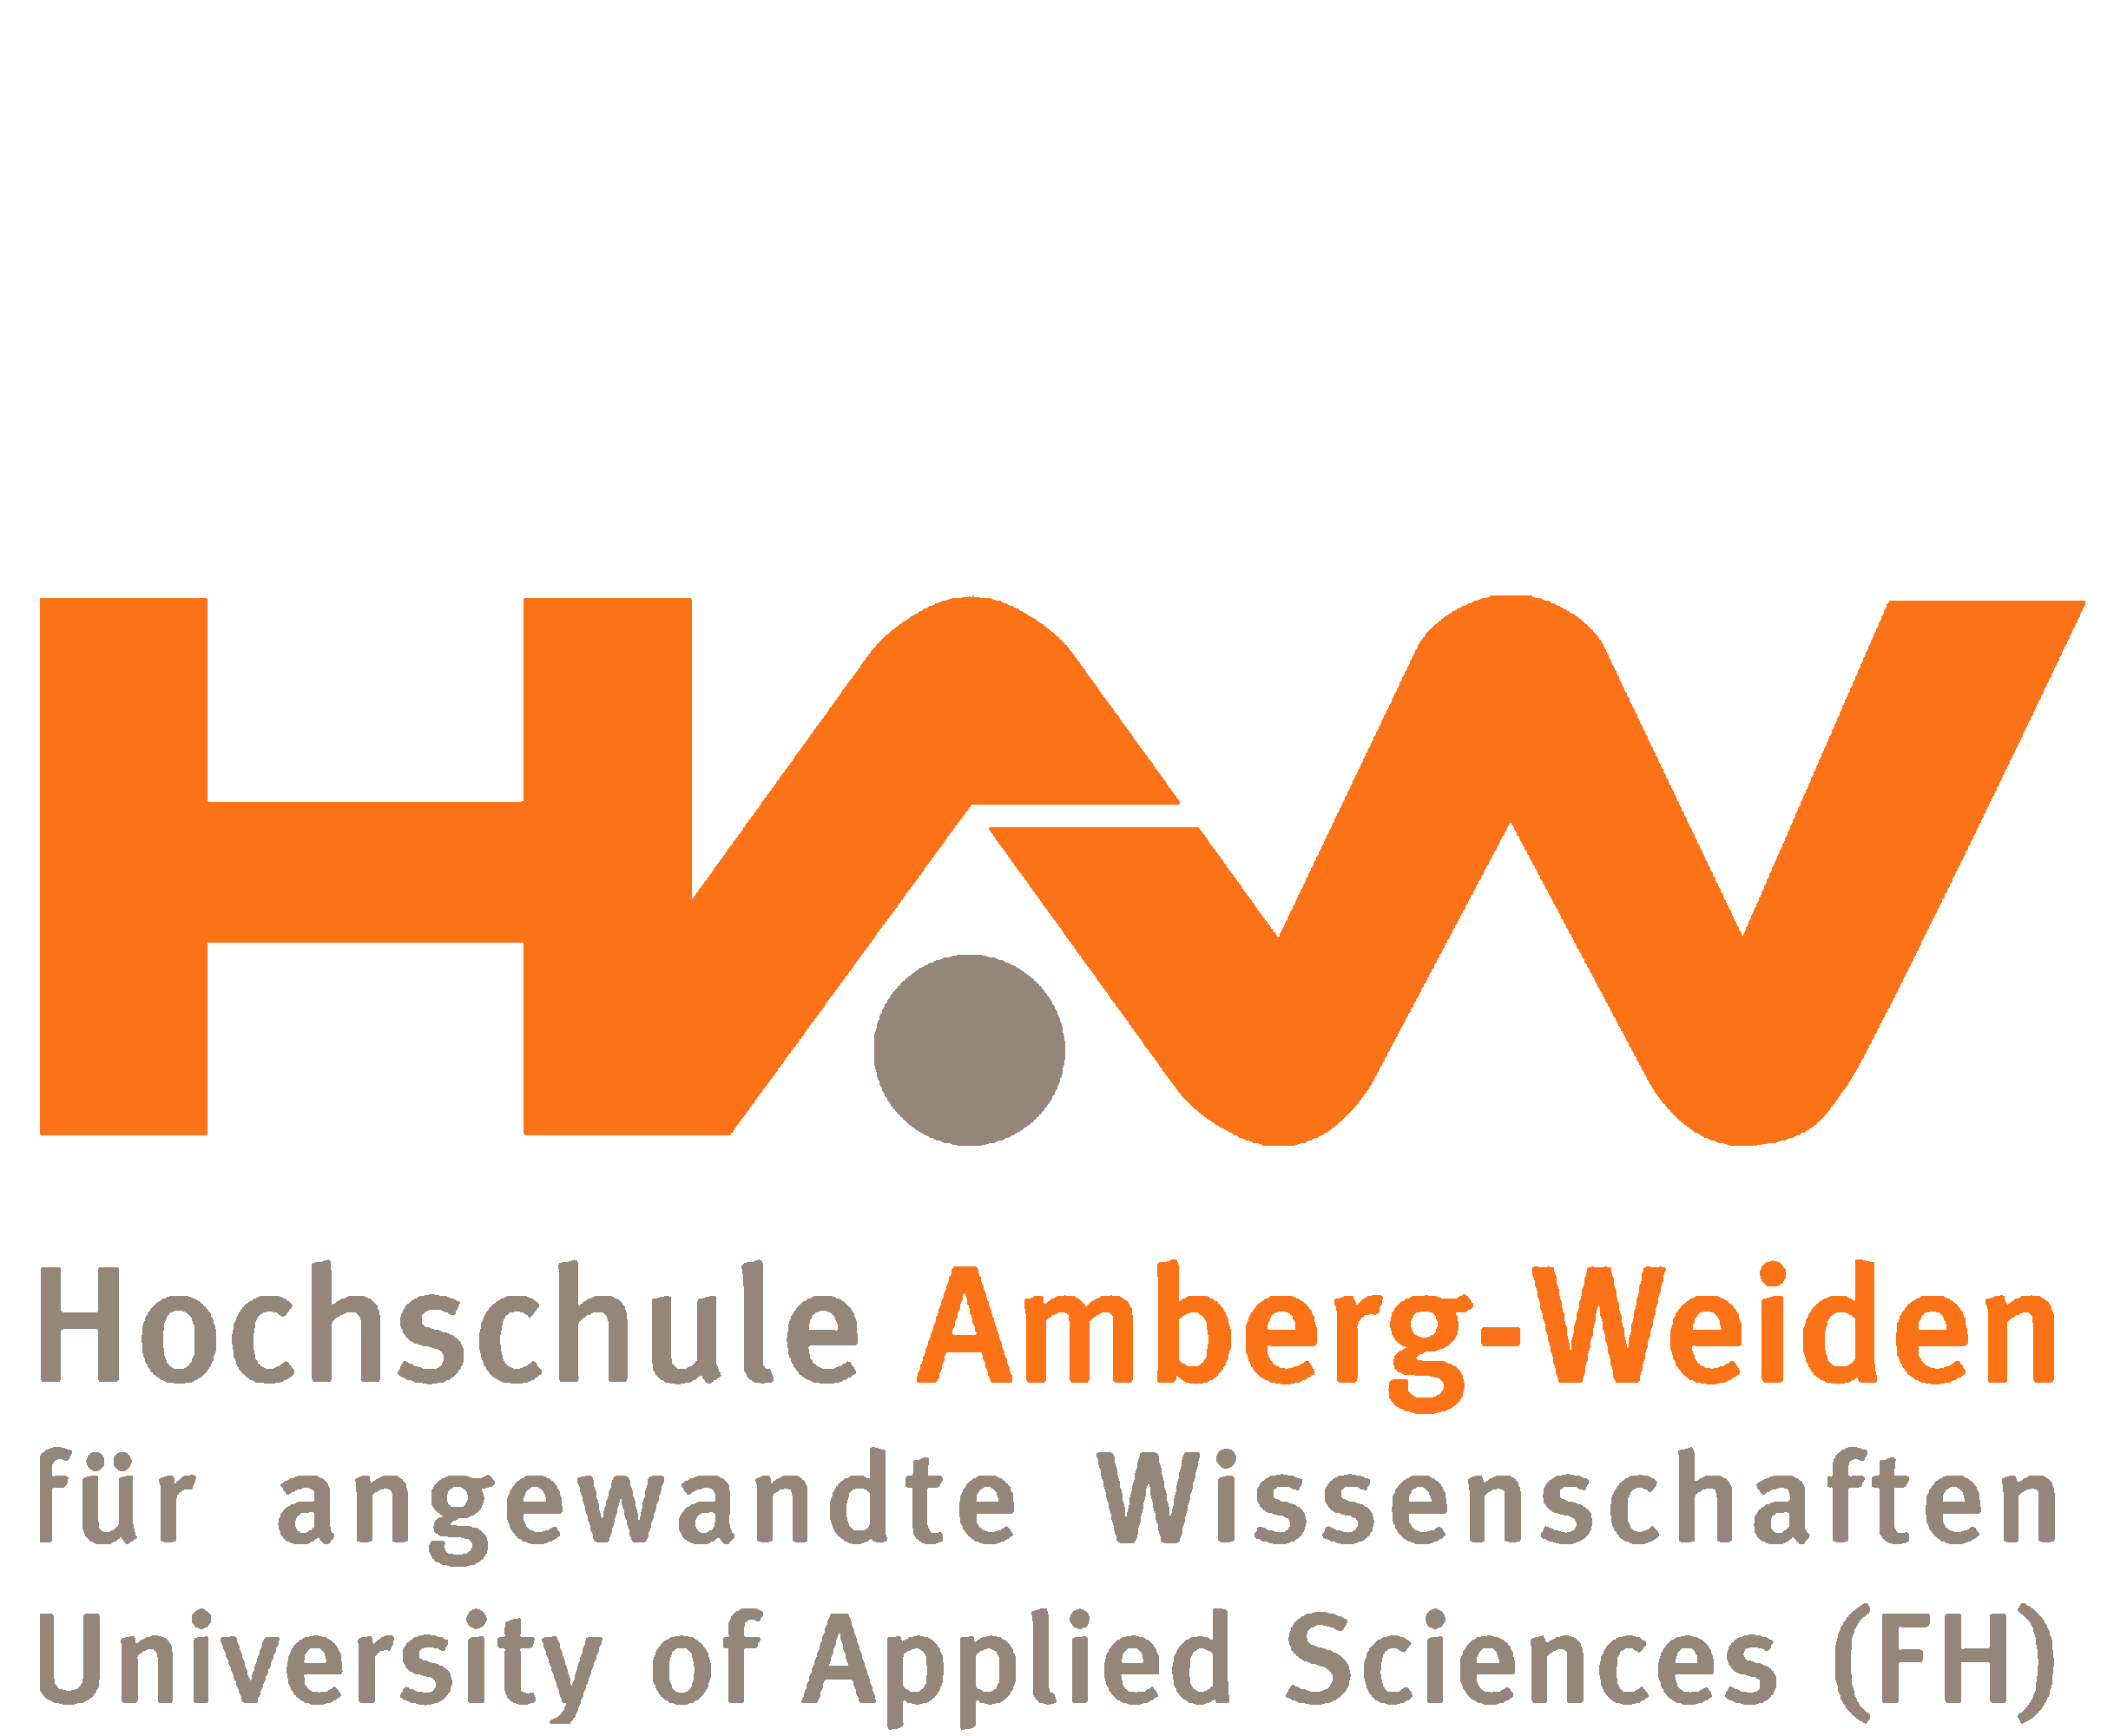 Hochschule für angewandte Wissenschaften Amberg-Weiden